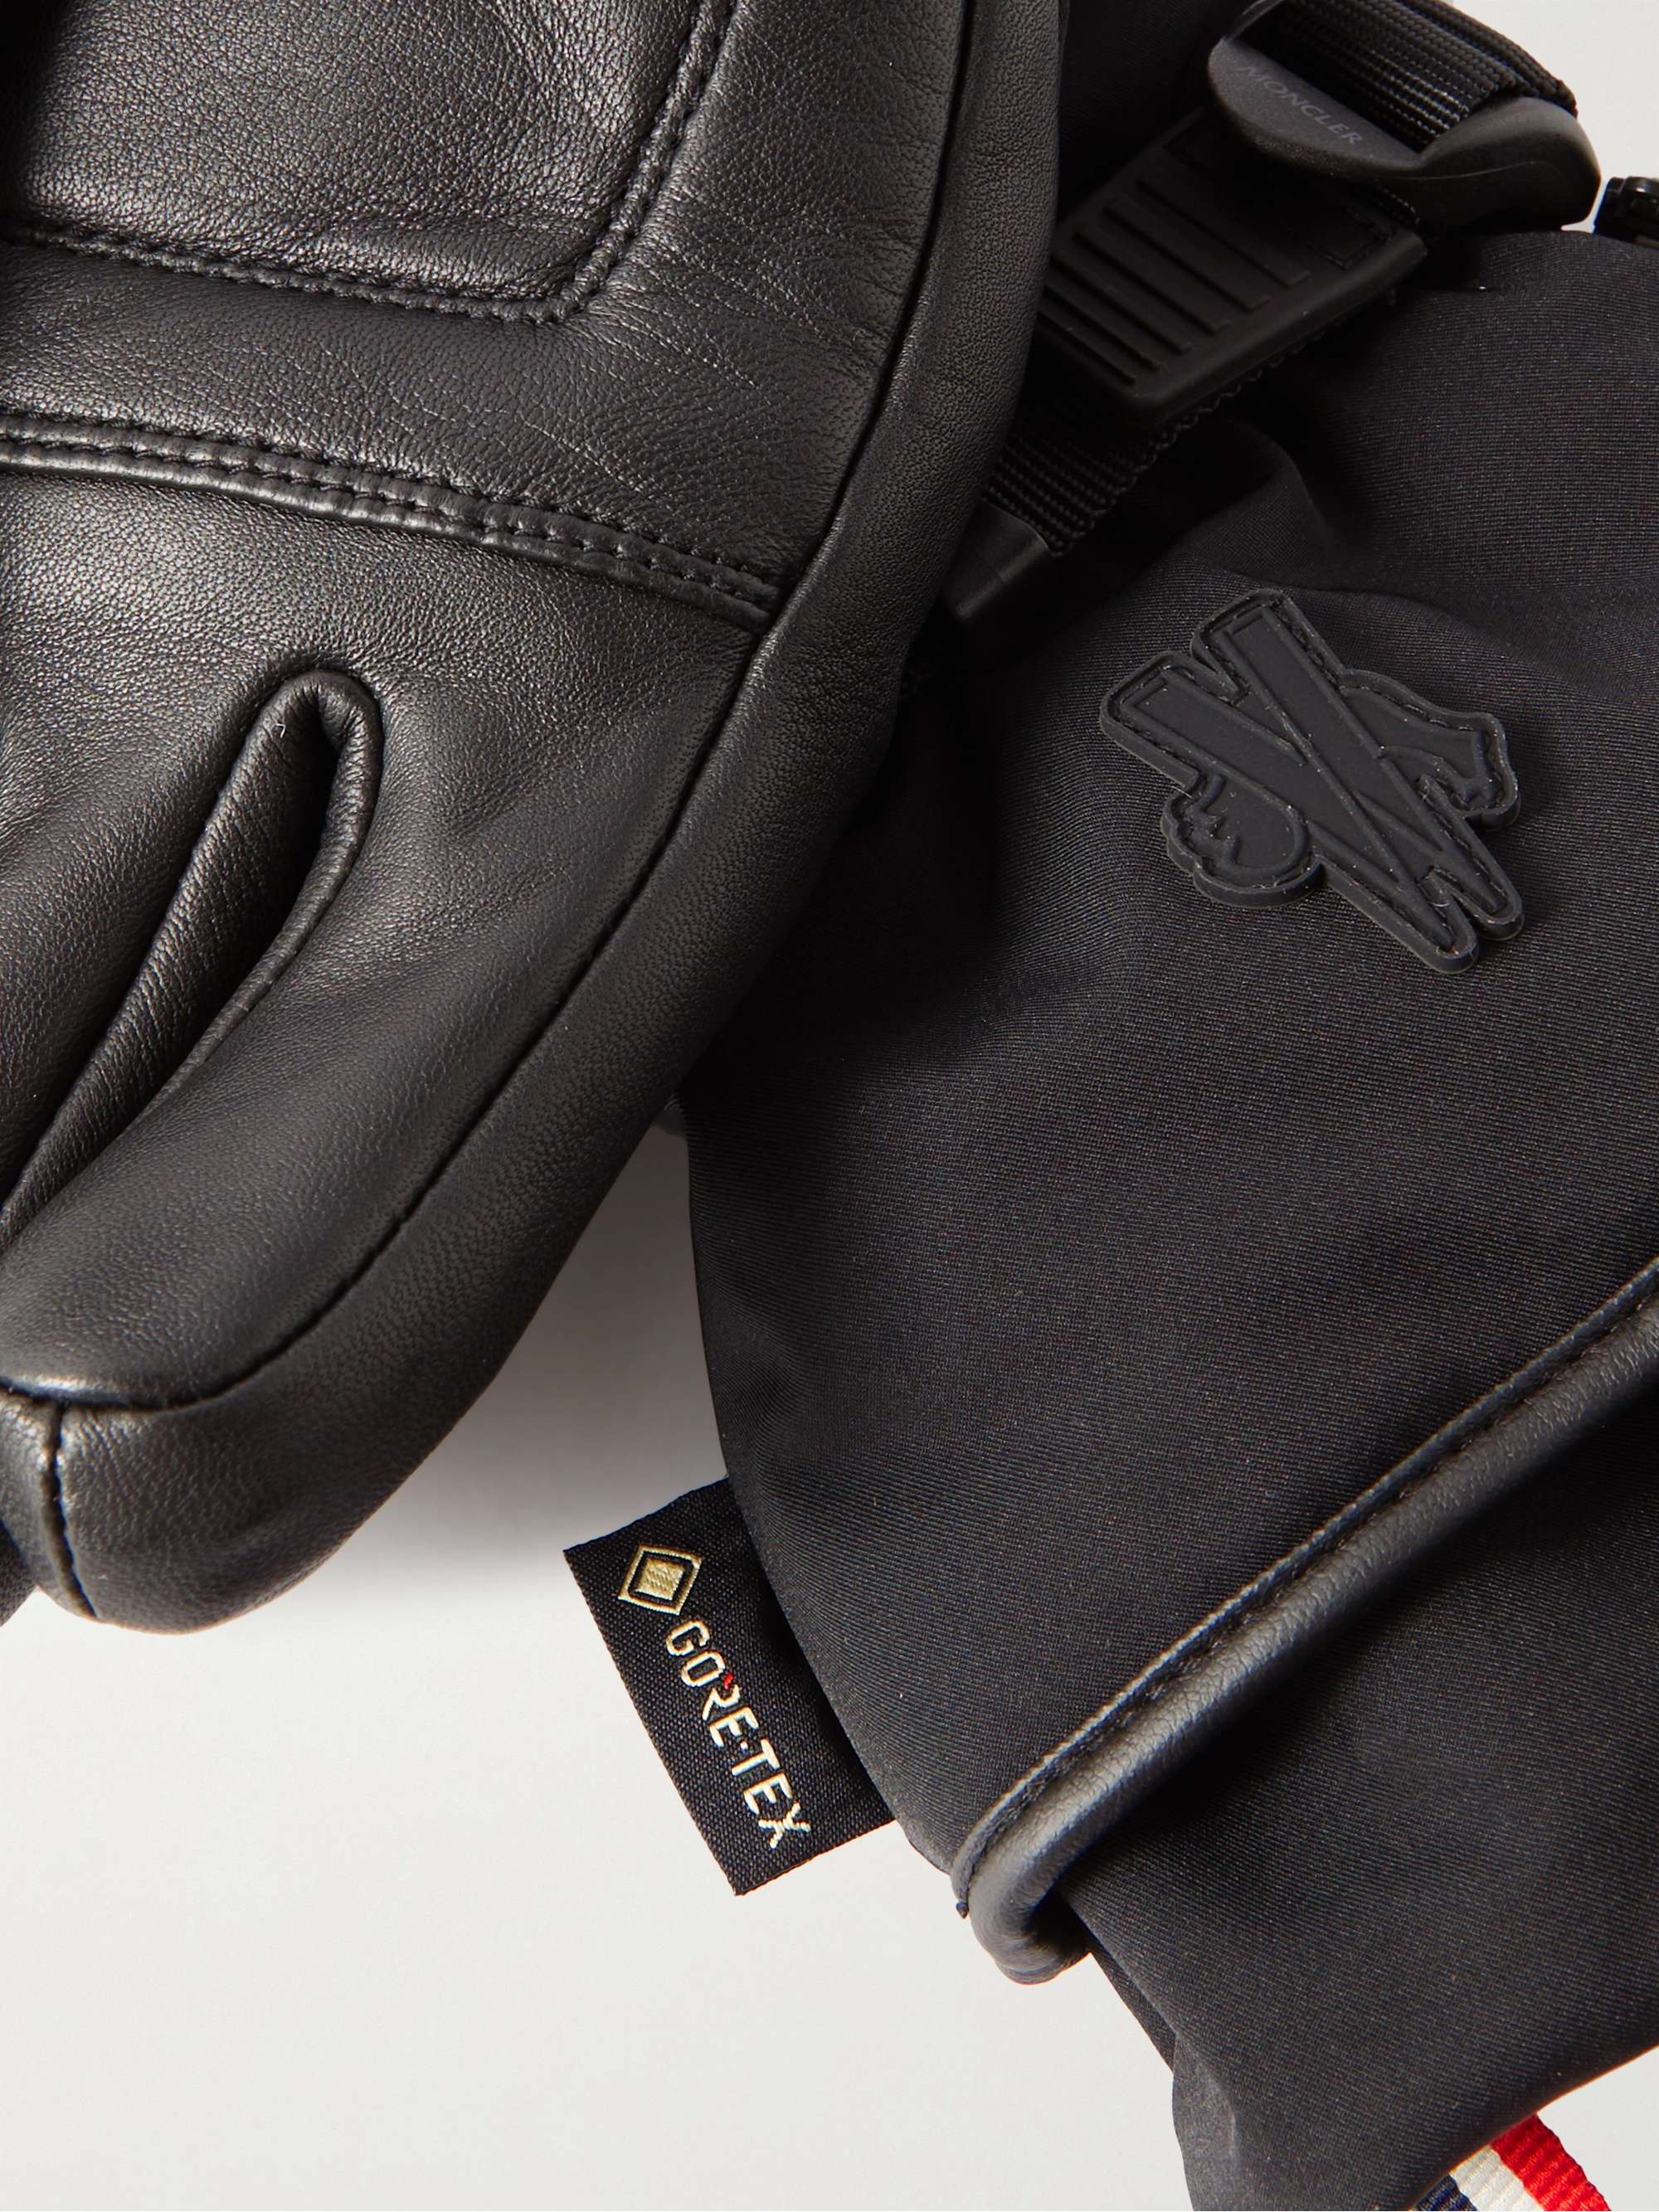 MONCLER GRENOBLE Logo-Appliquéd Leather-Trimmed Ski Gloves